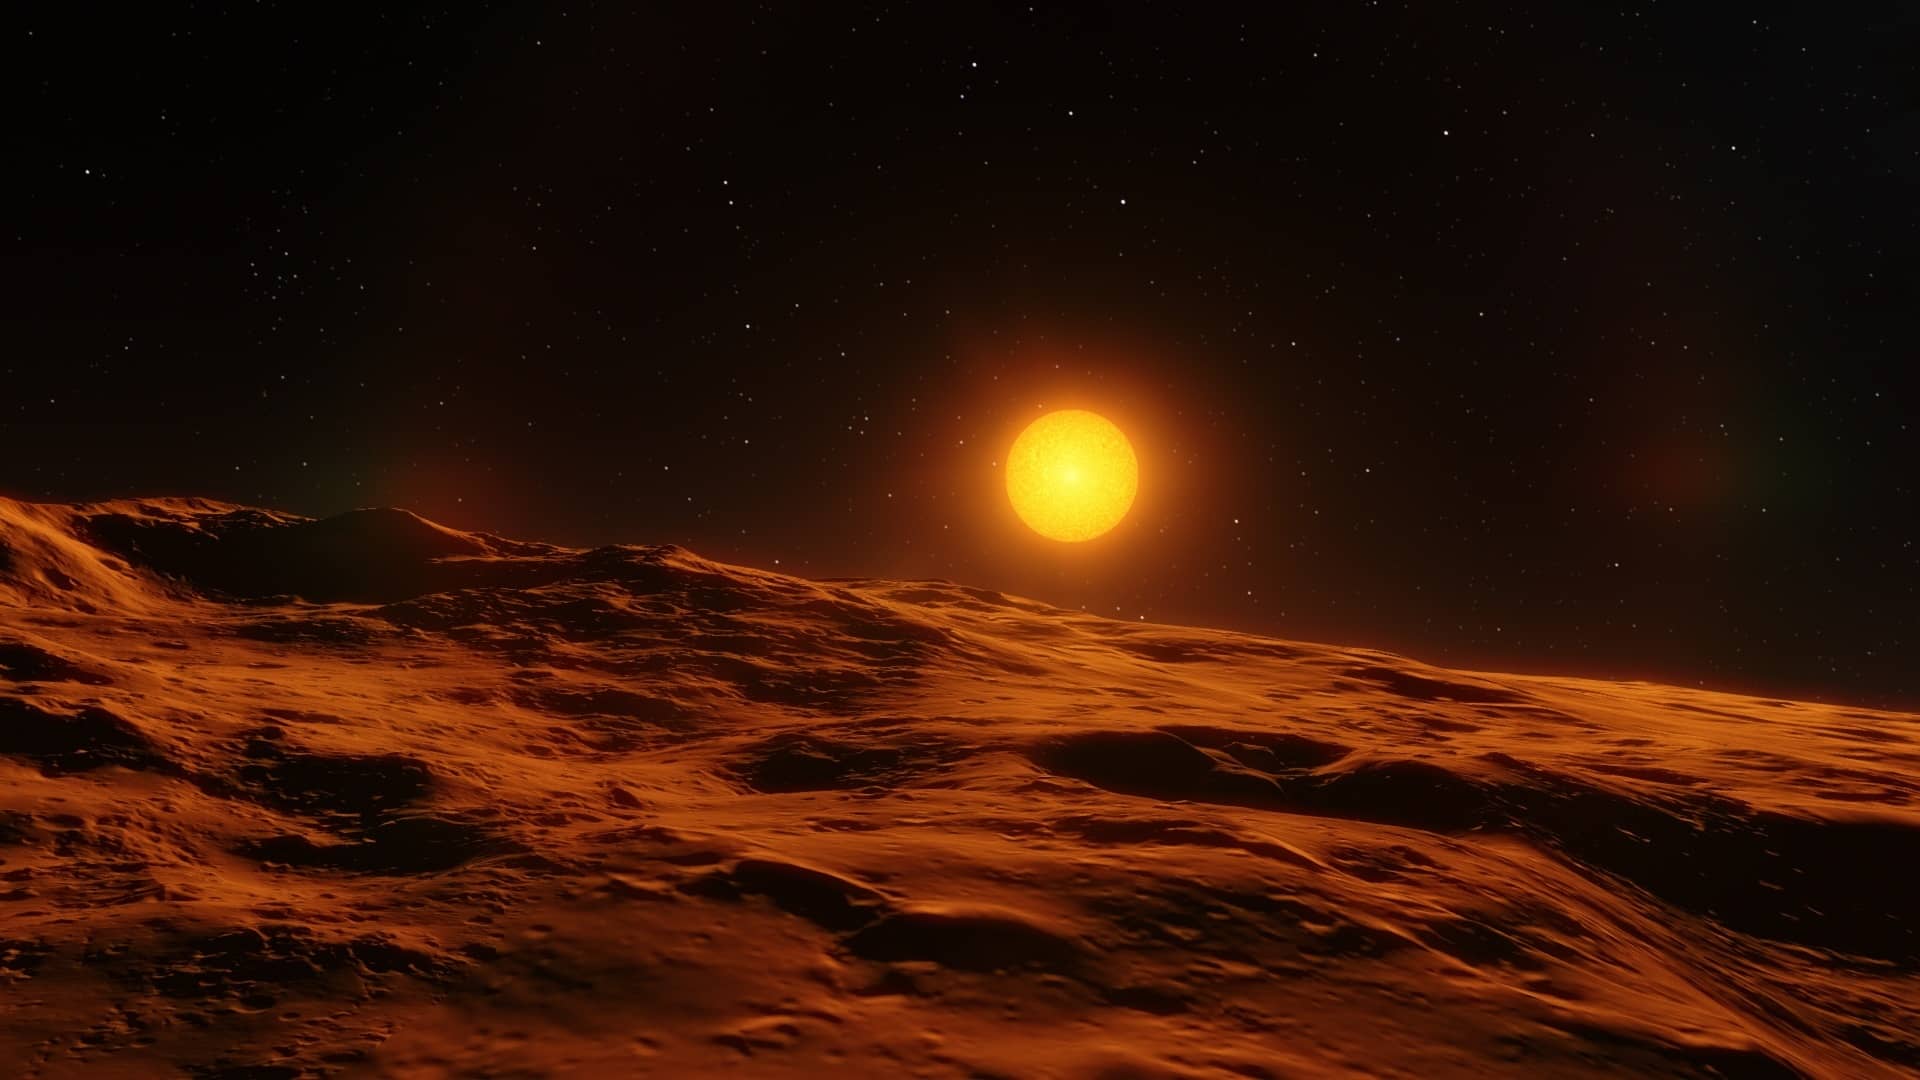 Bolygós rövidhírek: egy frissen felfedezett közeli exobolygó